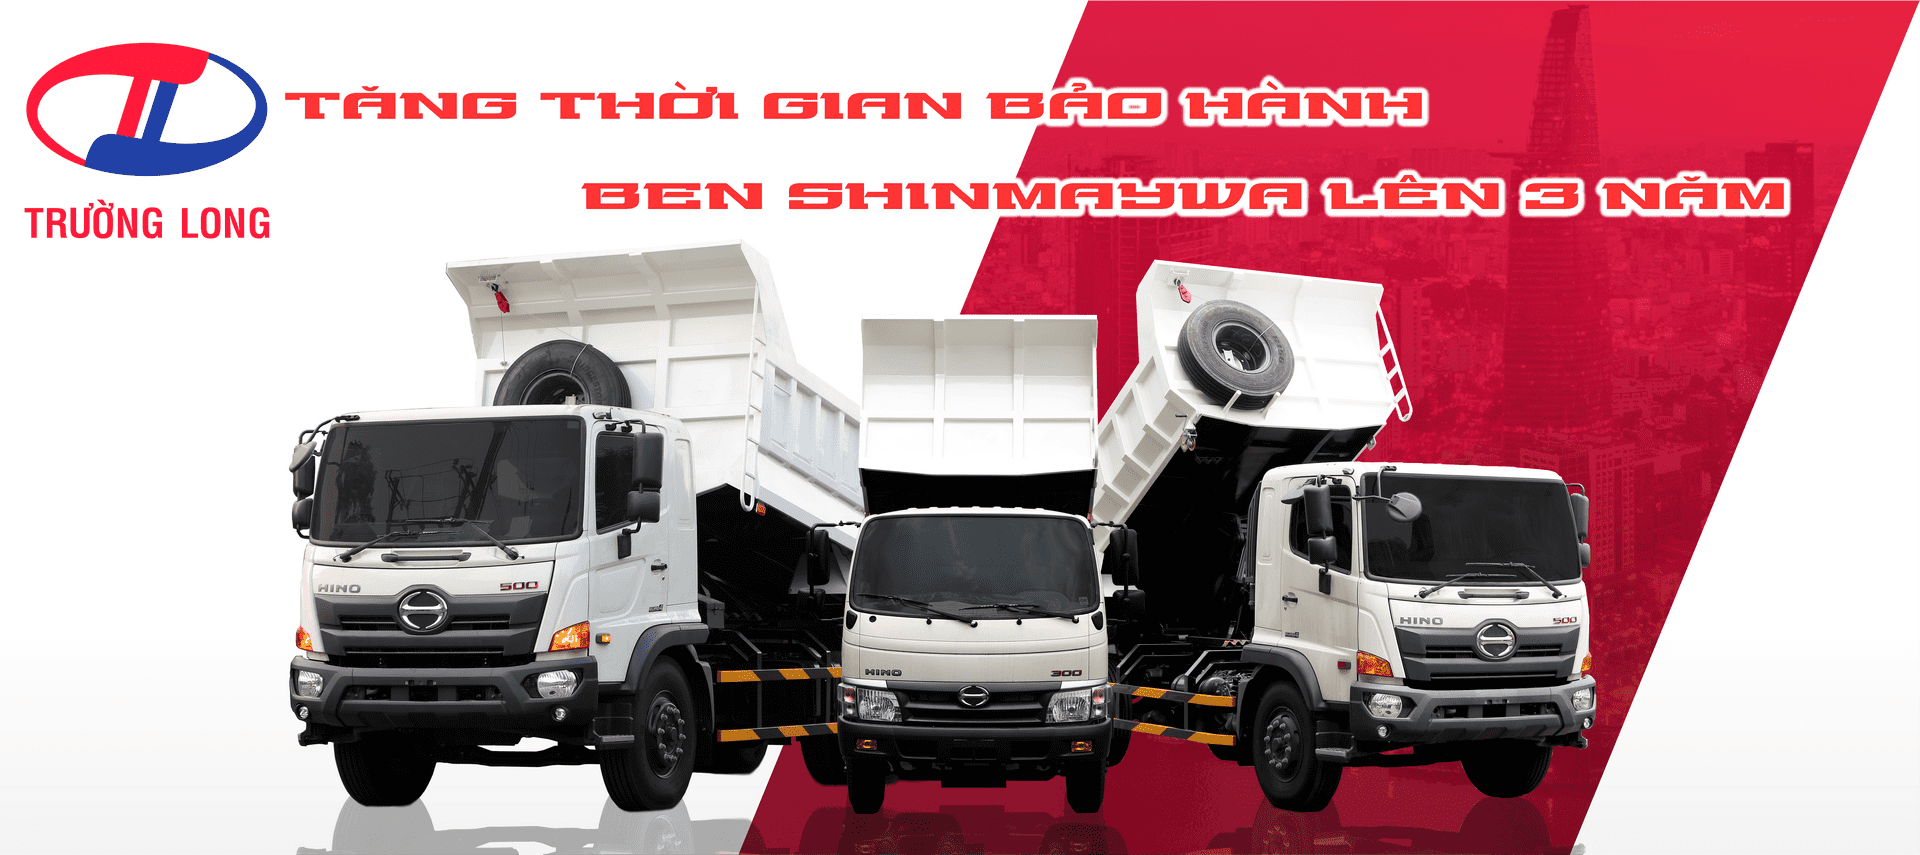 xe-ben-hino-shinmaywa-goi-bao-hanh-3-nam optimized